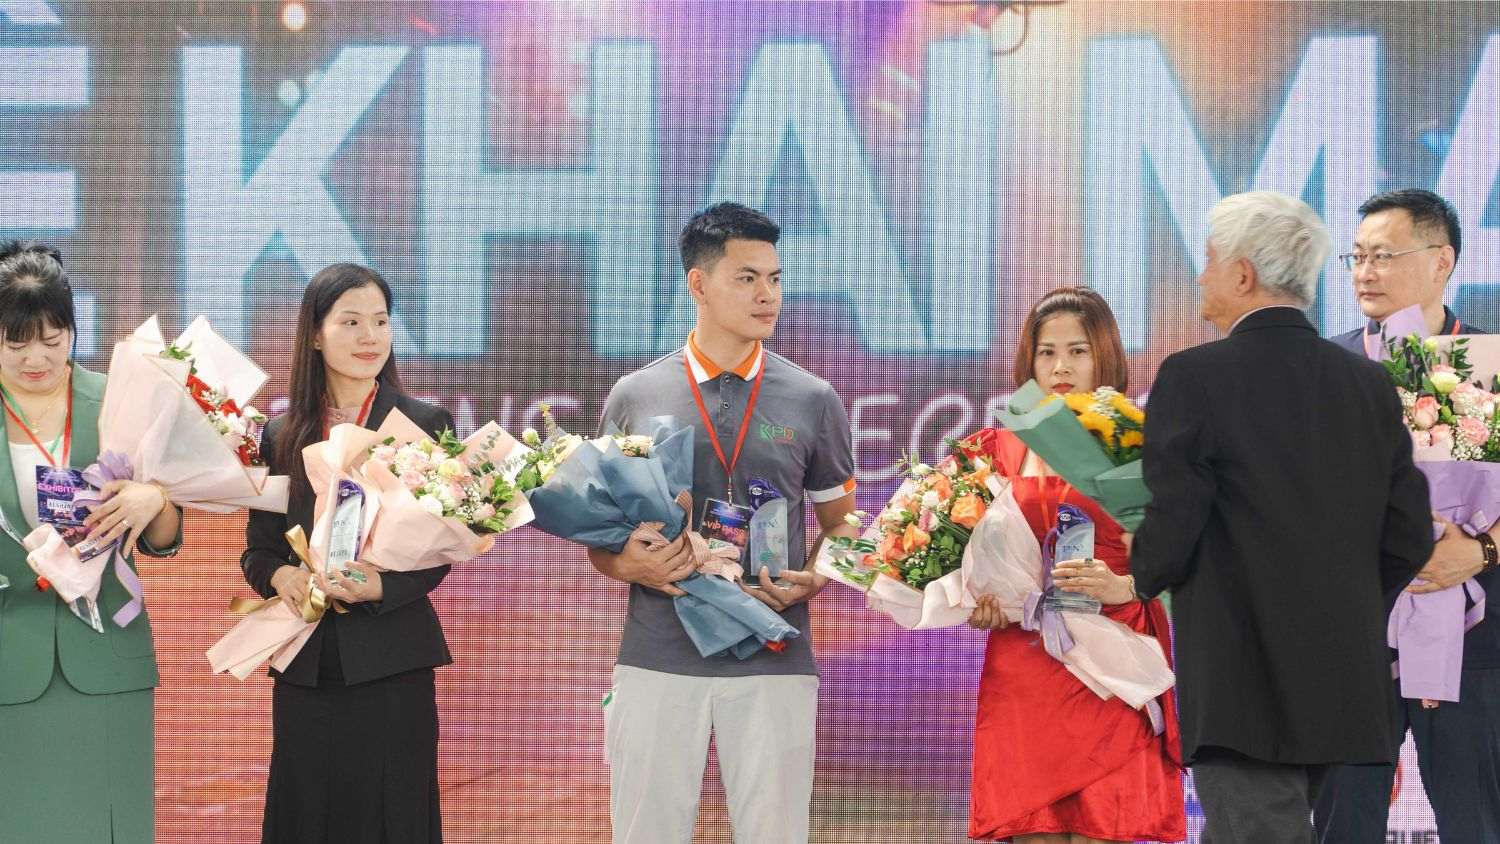 Hình ảnh Khang Phú Đạt Audio cùng các đơn vị tham gia triển lãm lên nhân quà của BTC